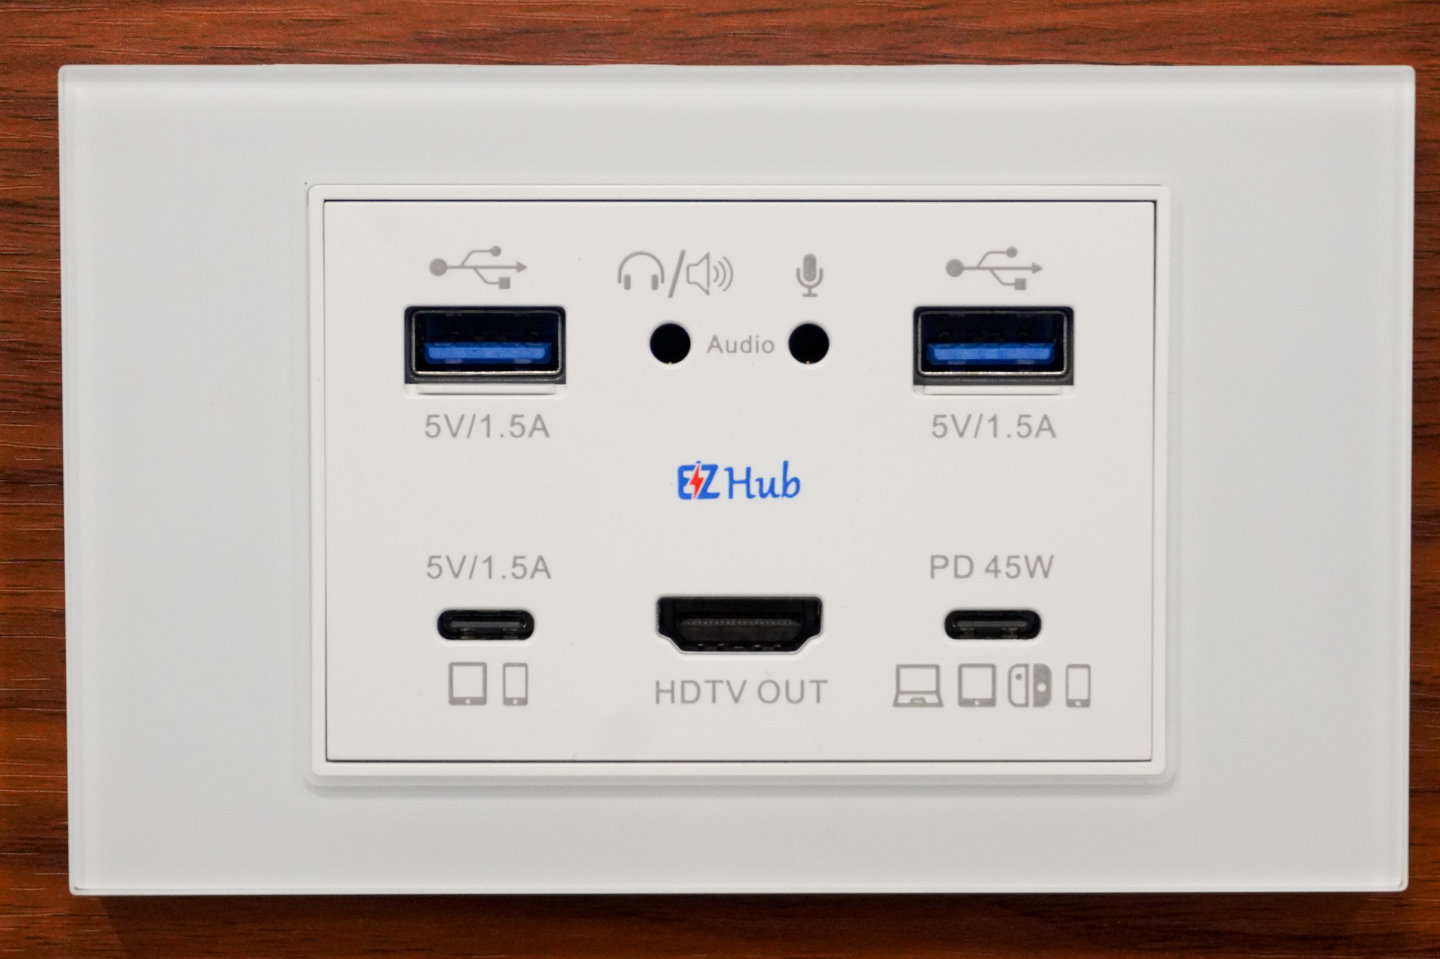 它採用USB Type-C端與裝置連接，提供3埠USB擴充、HDMI-Out以及音訊輸出、麥克風功能。